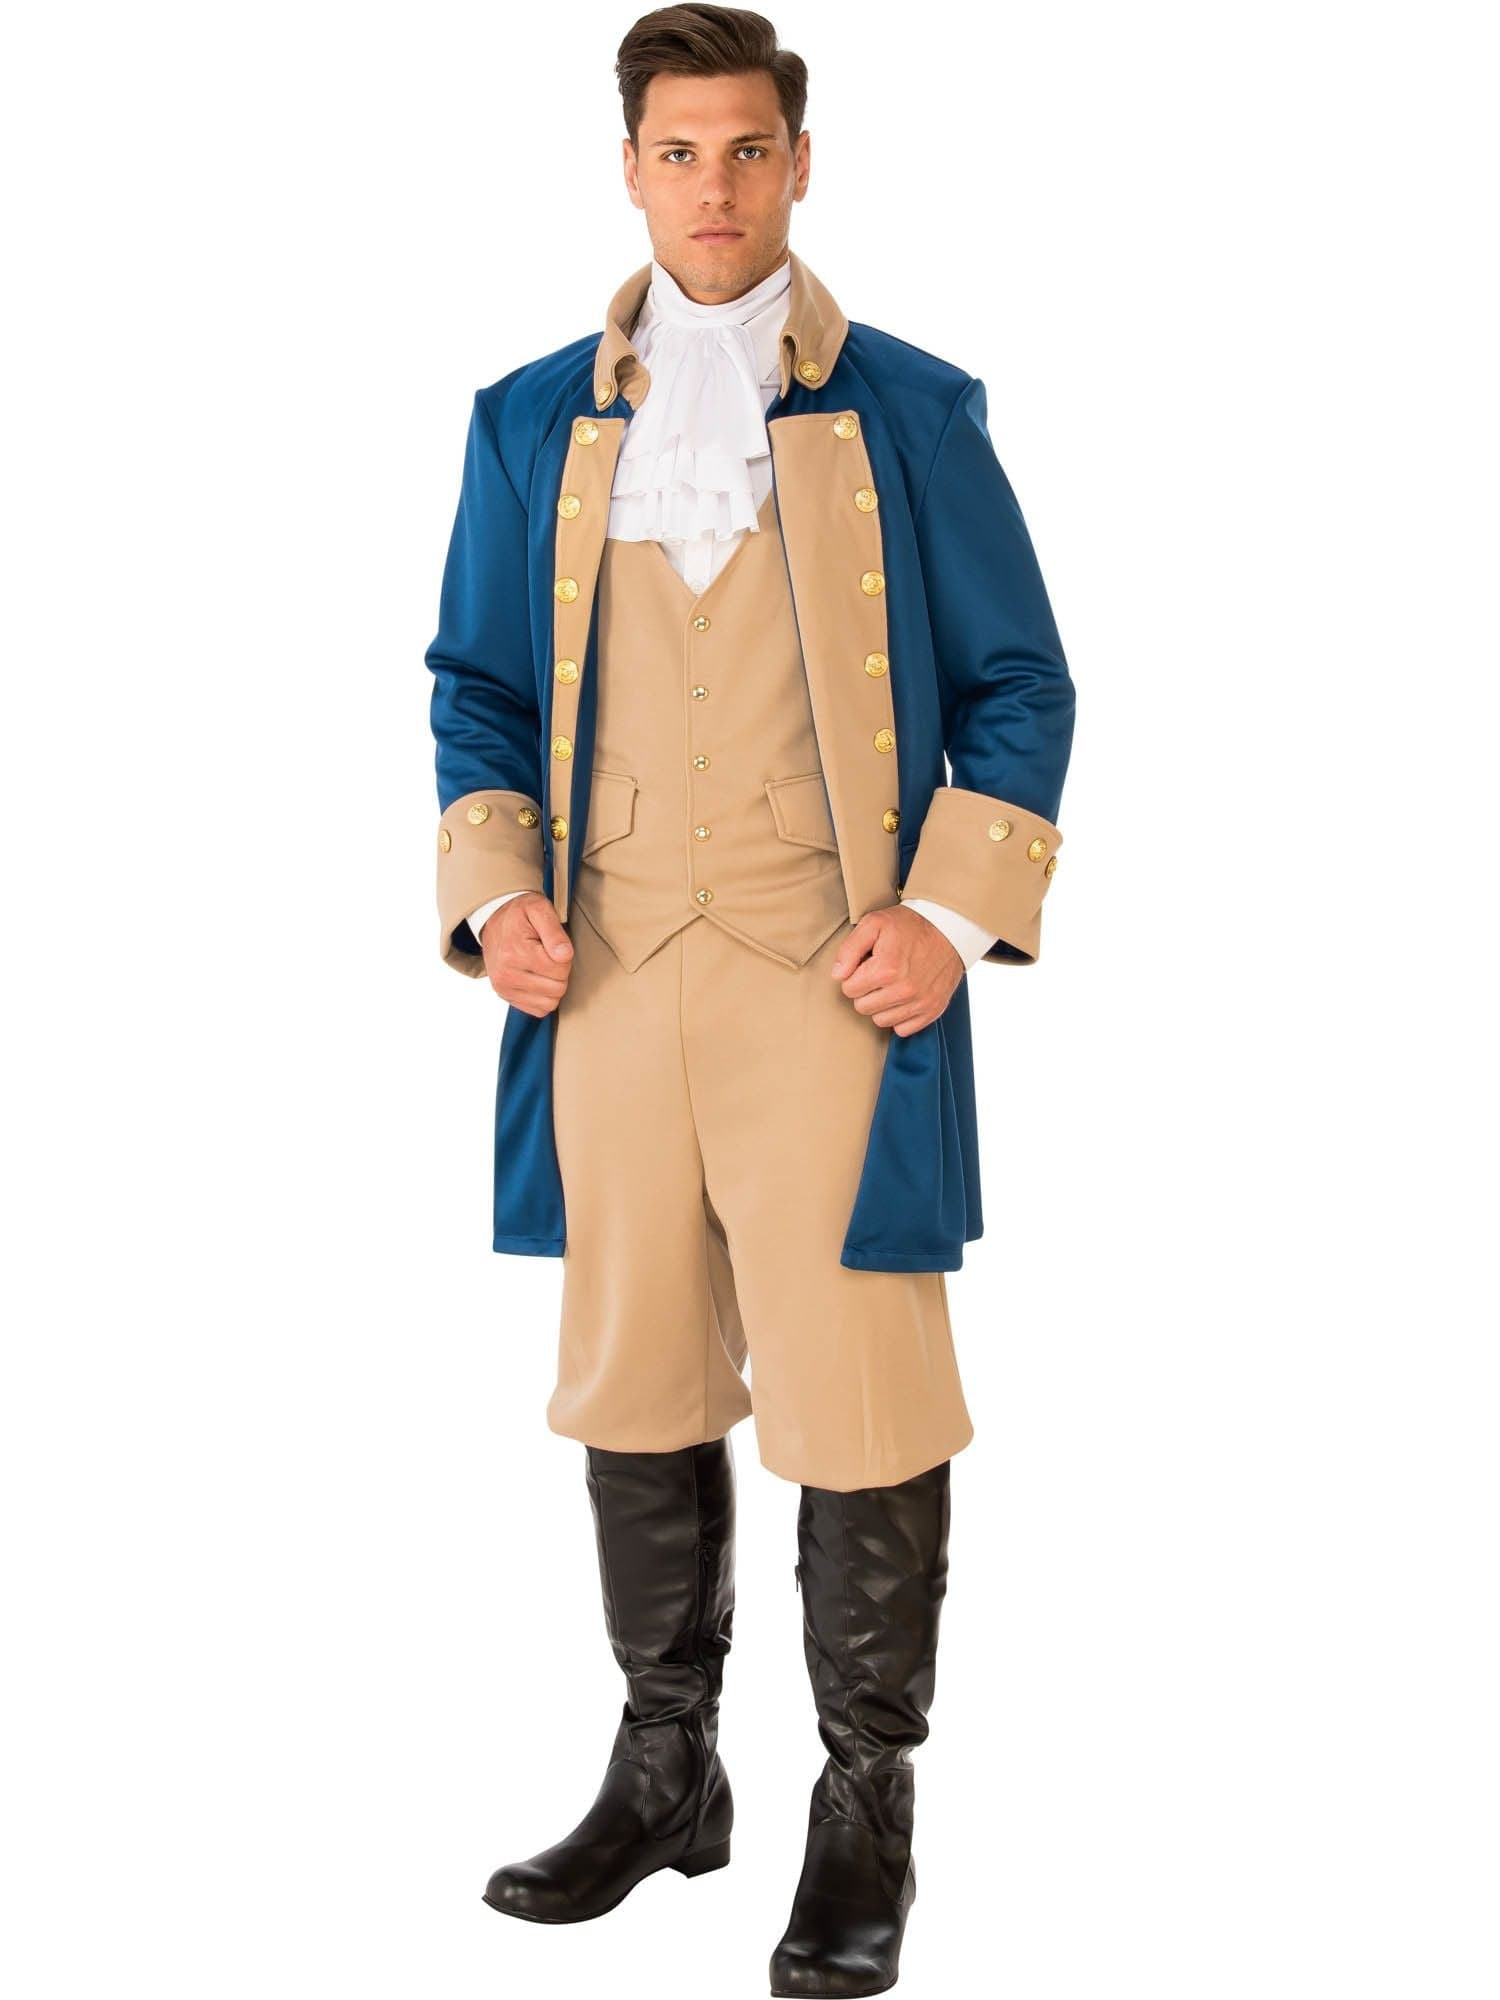 Adult Patriotic Man Costume - costumes.com